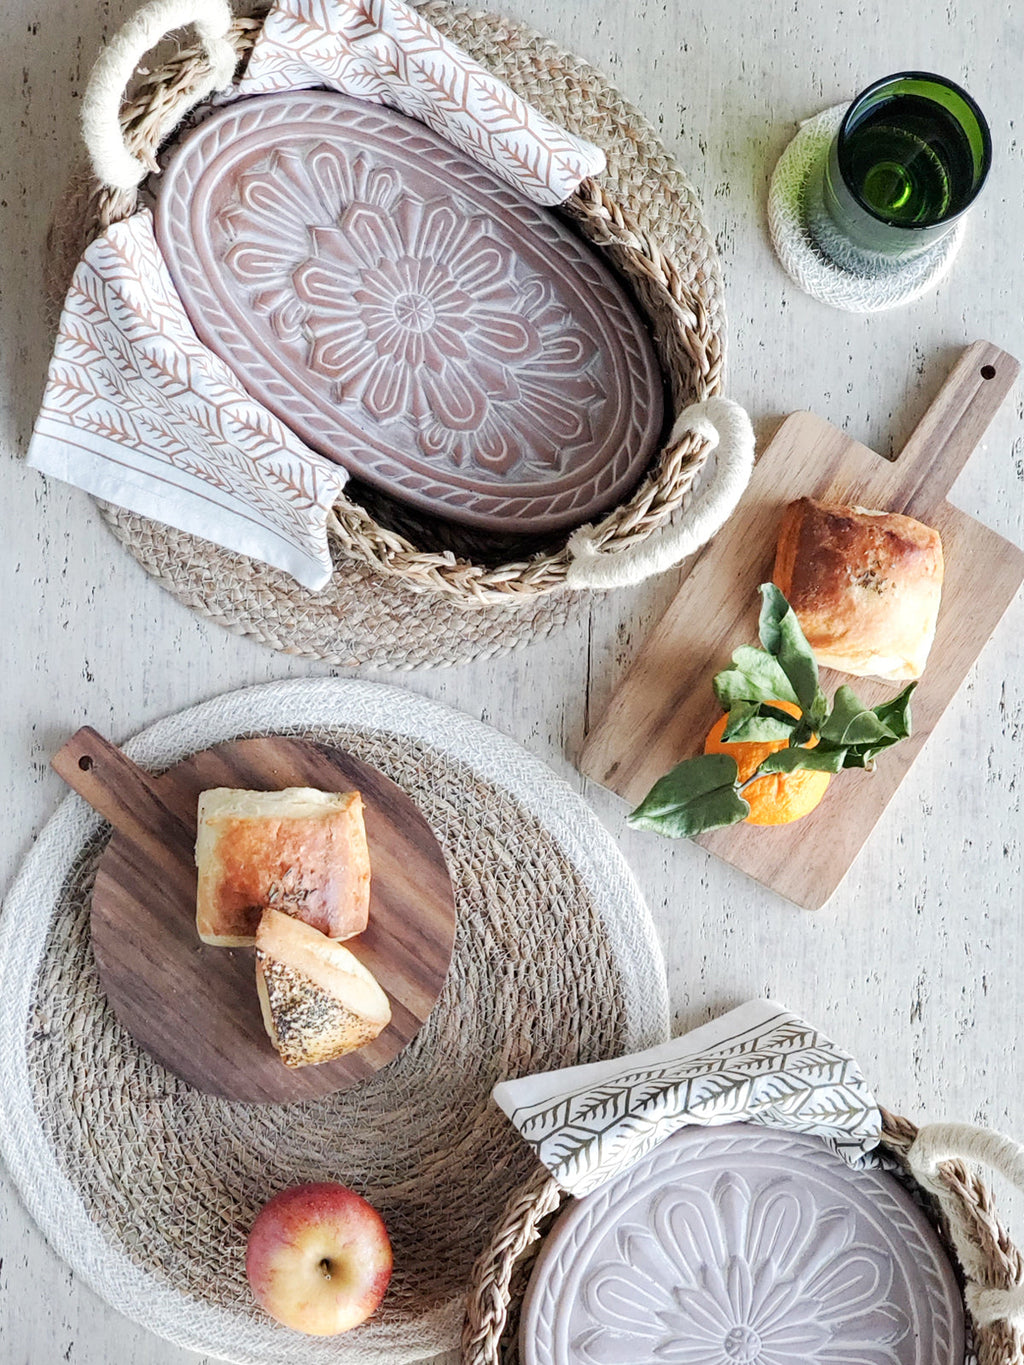 Korissa Round Bread Warmer & Basket - Elmendorf Baking Supplies